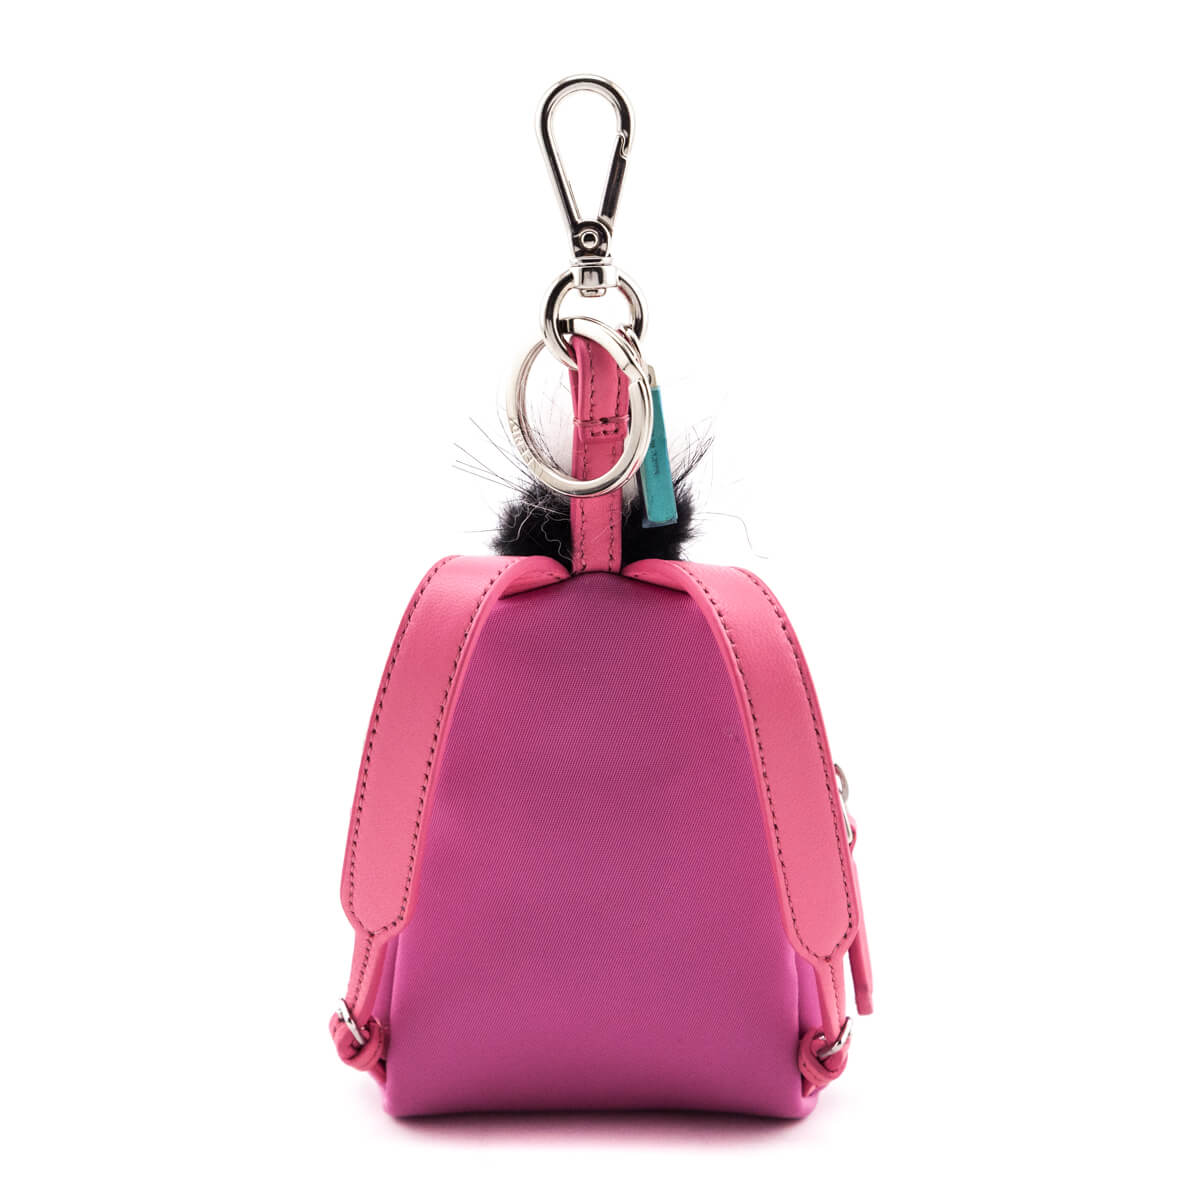 NWT FENDI Punkito Karlito Fur Key Chain Bag Charm Pink | eBay